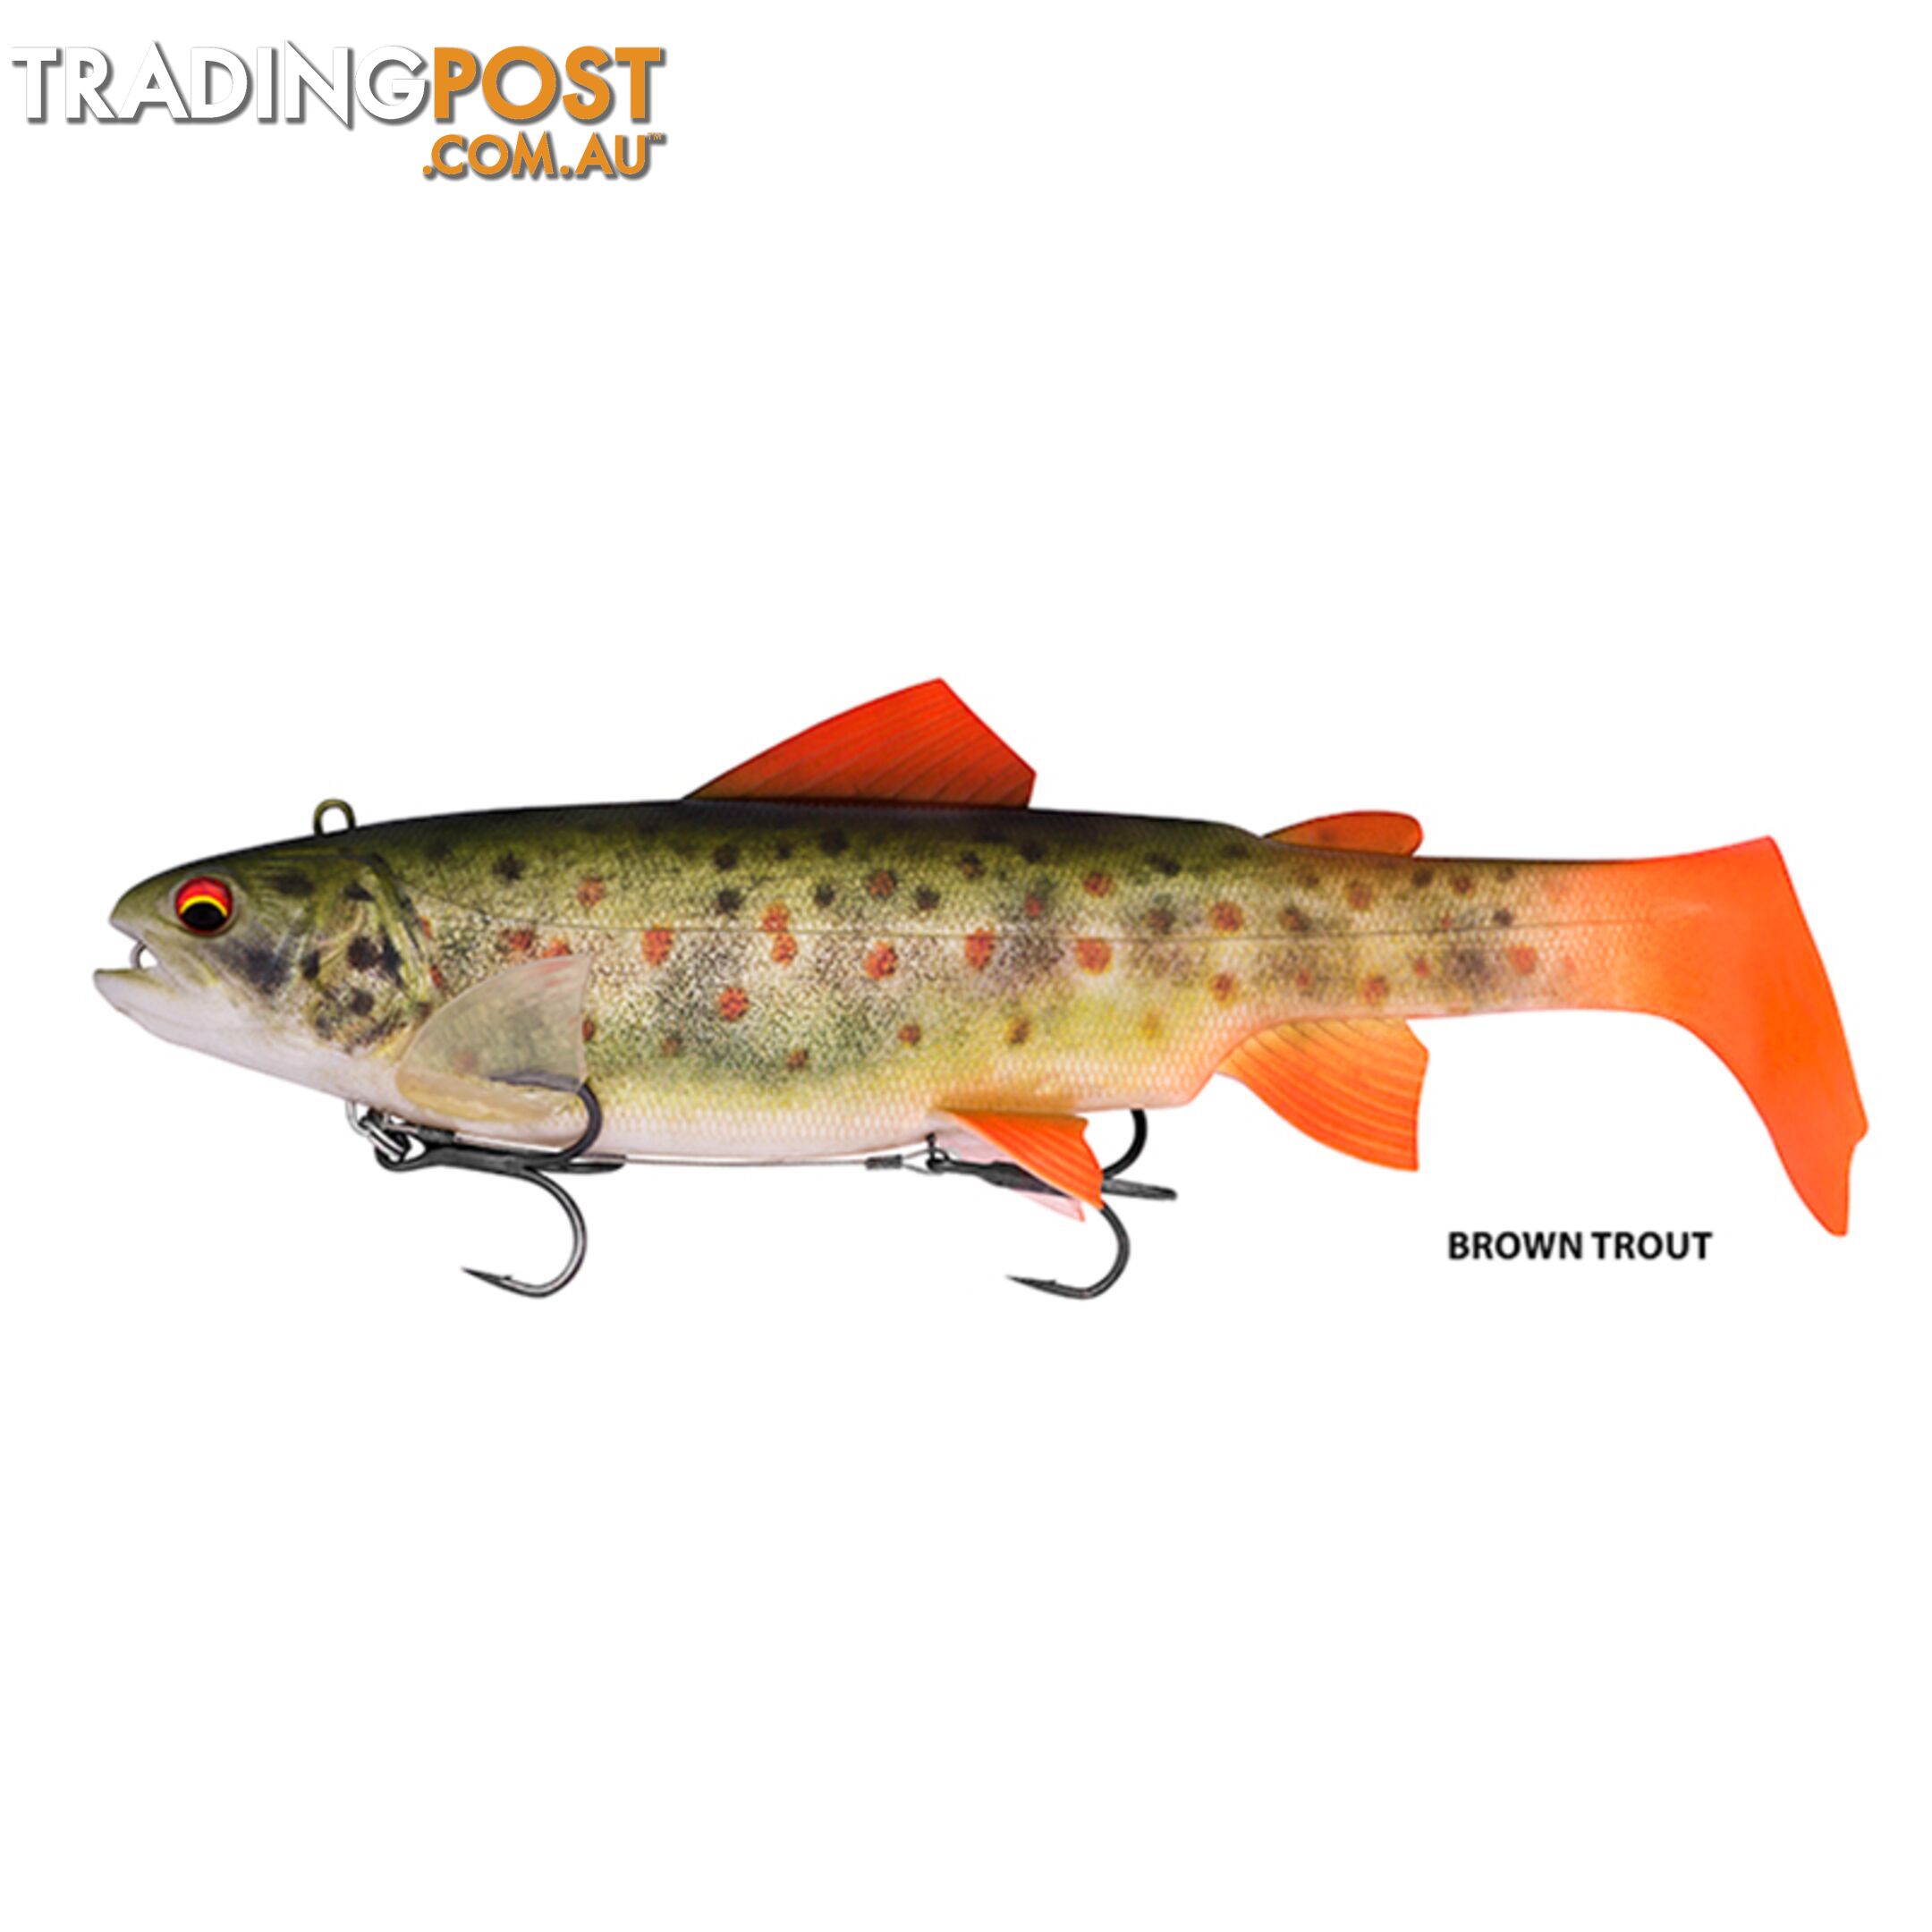 Daiwa Trout Swimbait 18 & 25cm - Brown Trout, 18cm - 58440